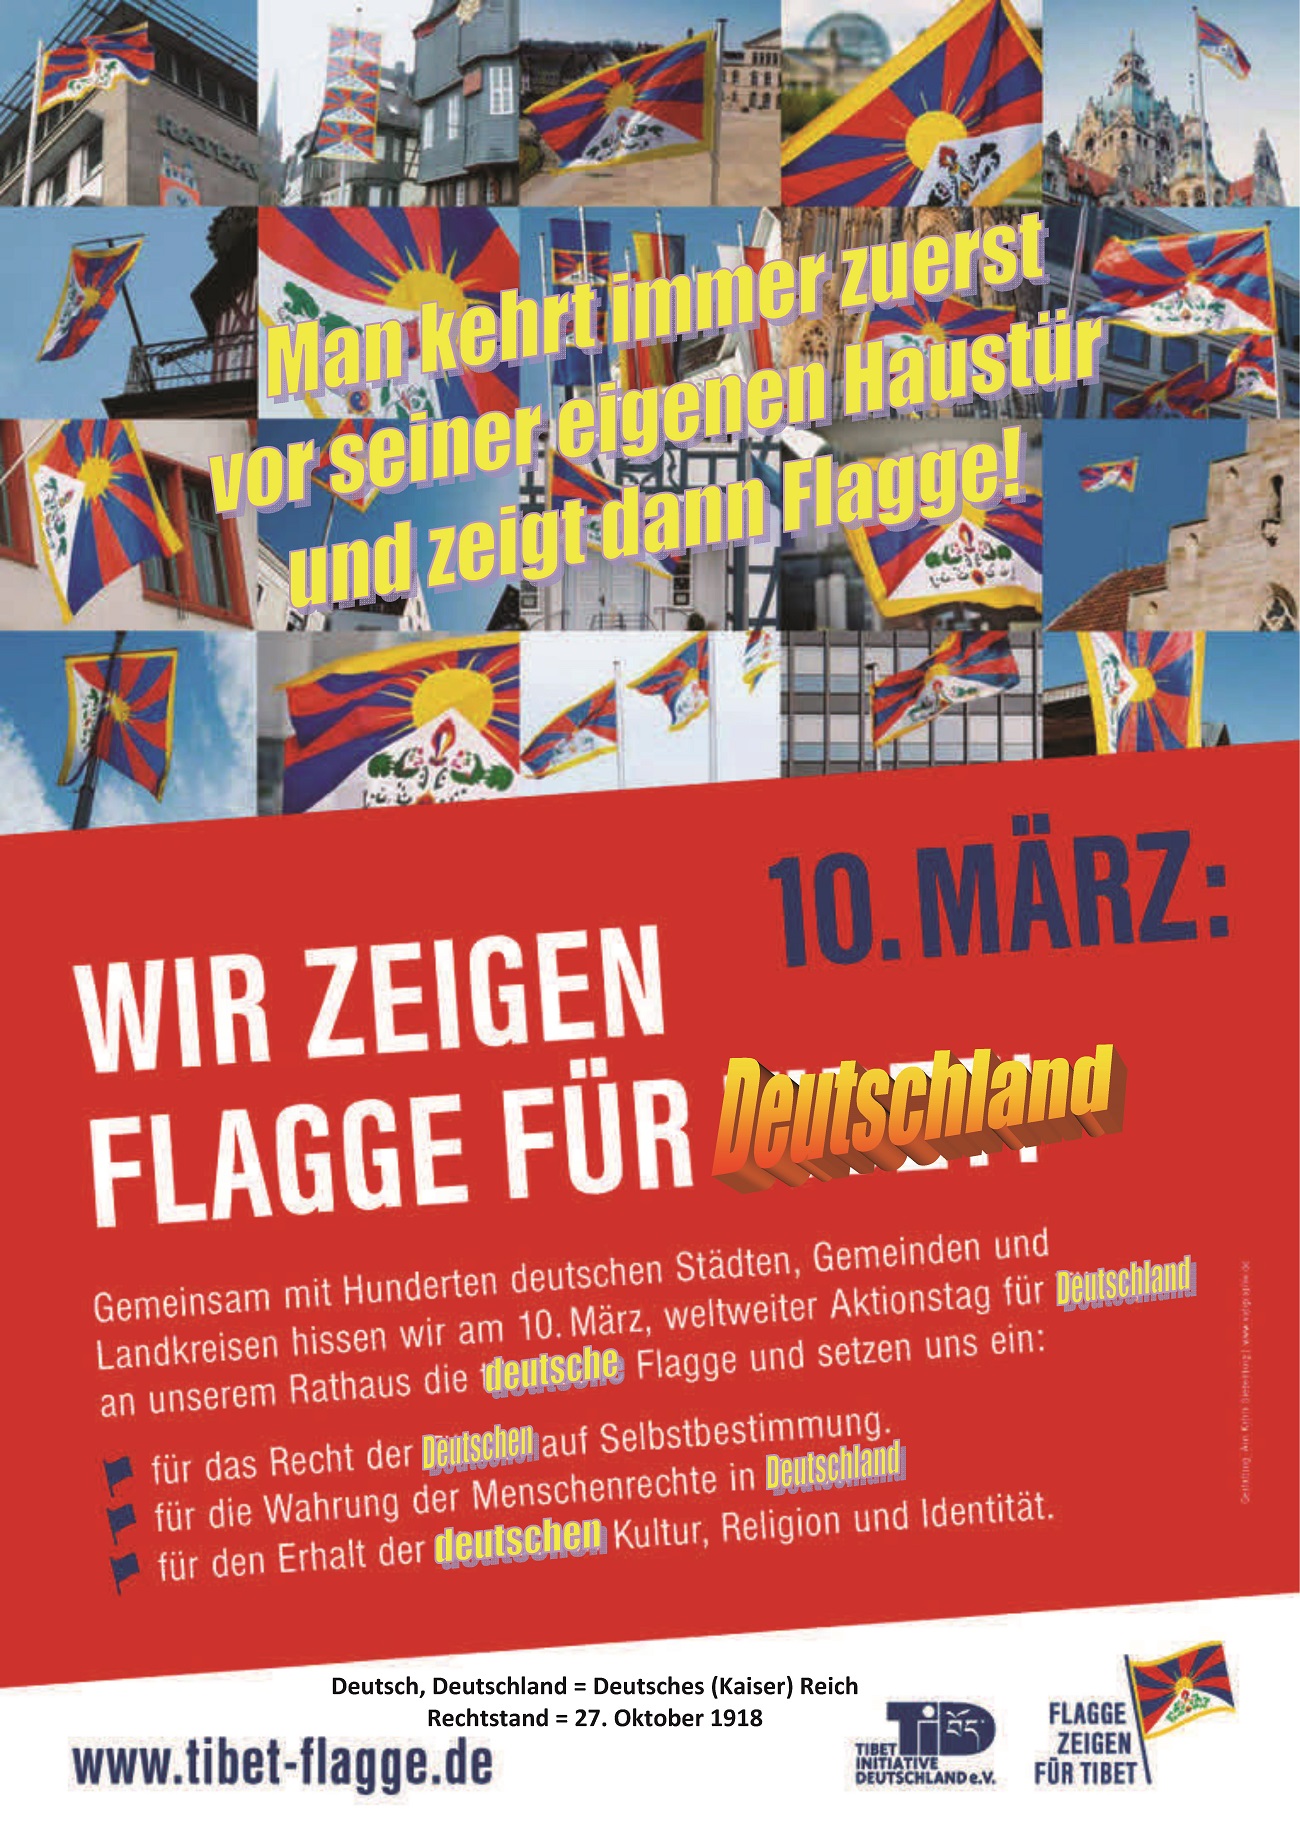 Flagge für Tibet oder für Deutschland -
          Problemdarstellung - pdf